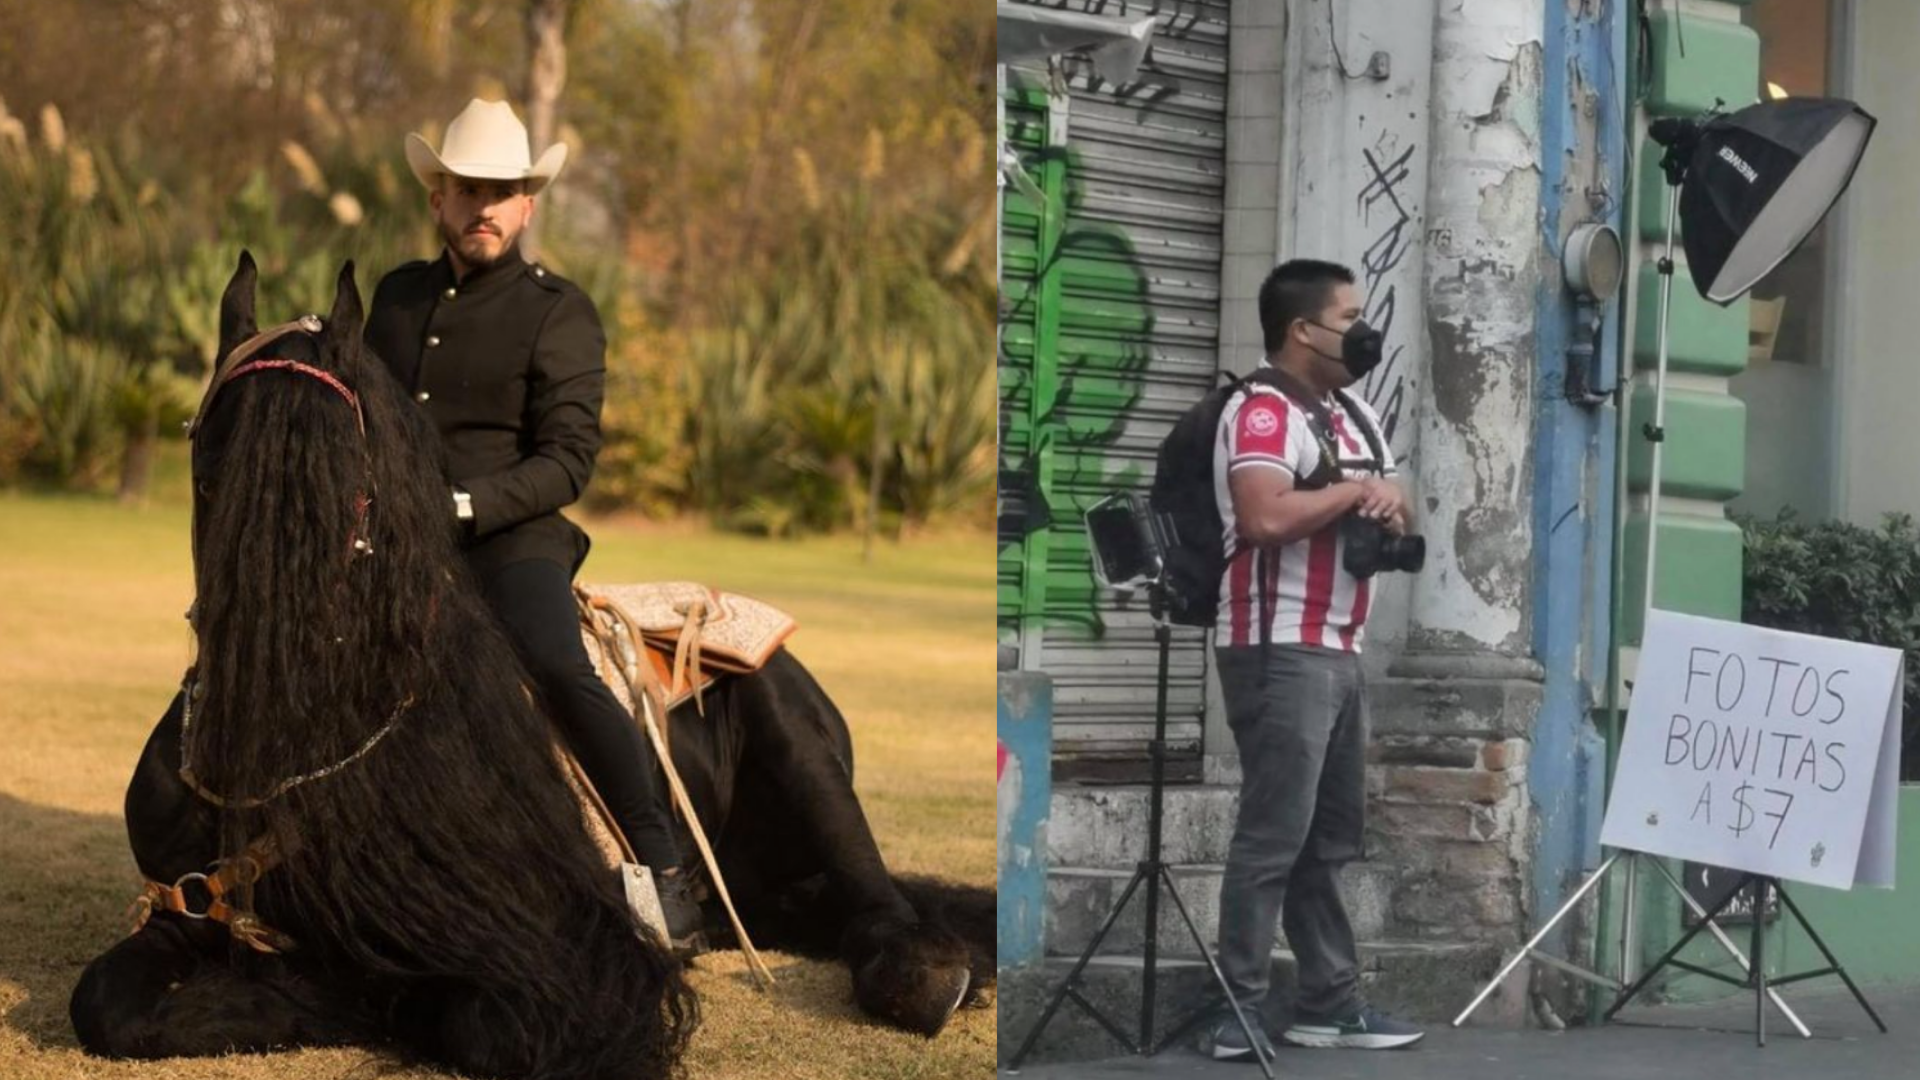 Pancho Uresti busca al fotógrafo que se hizo viral por vender fotos a $7